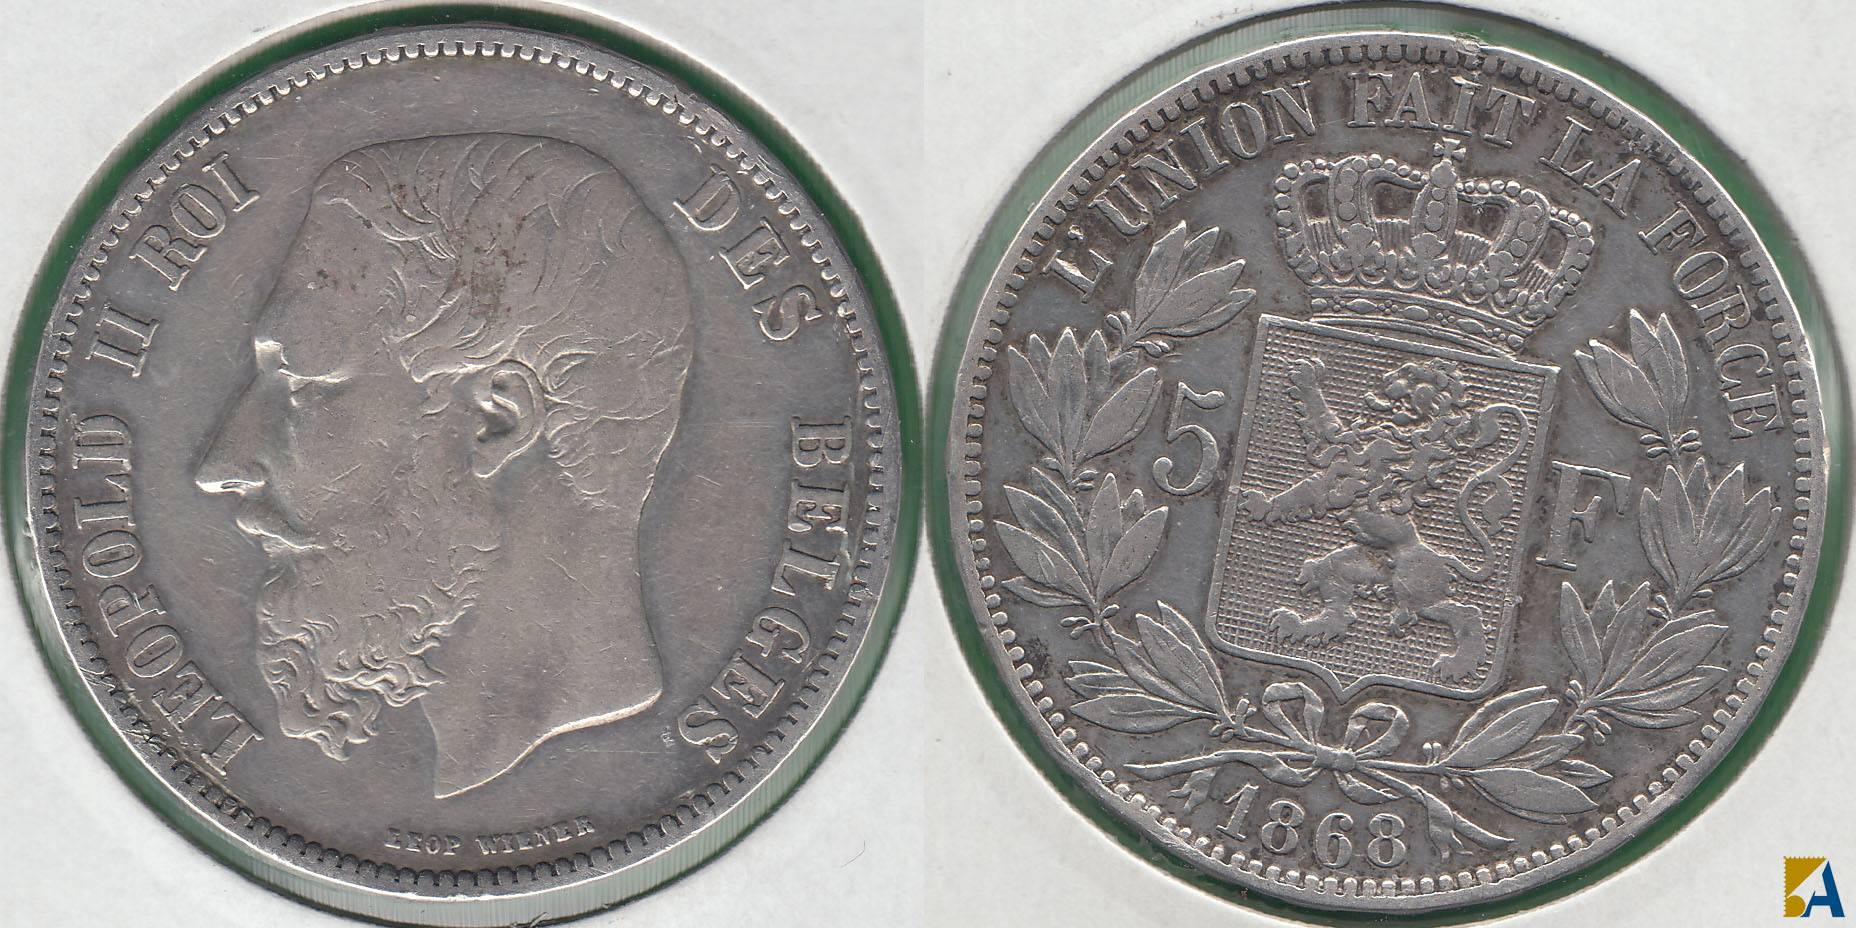 BELGICA - BELGIUM. 5 FRANCOS (FRANCS) DE 1868. PLATA 0.900. (3)